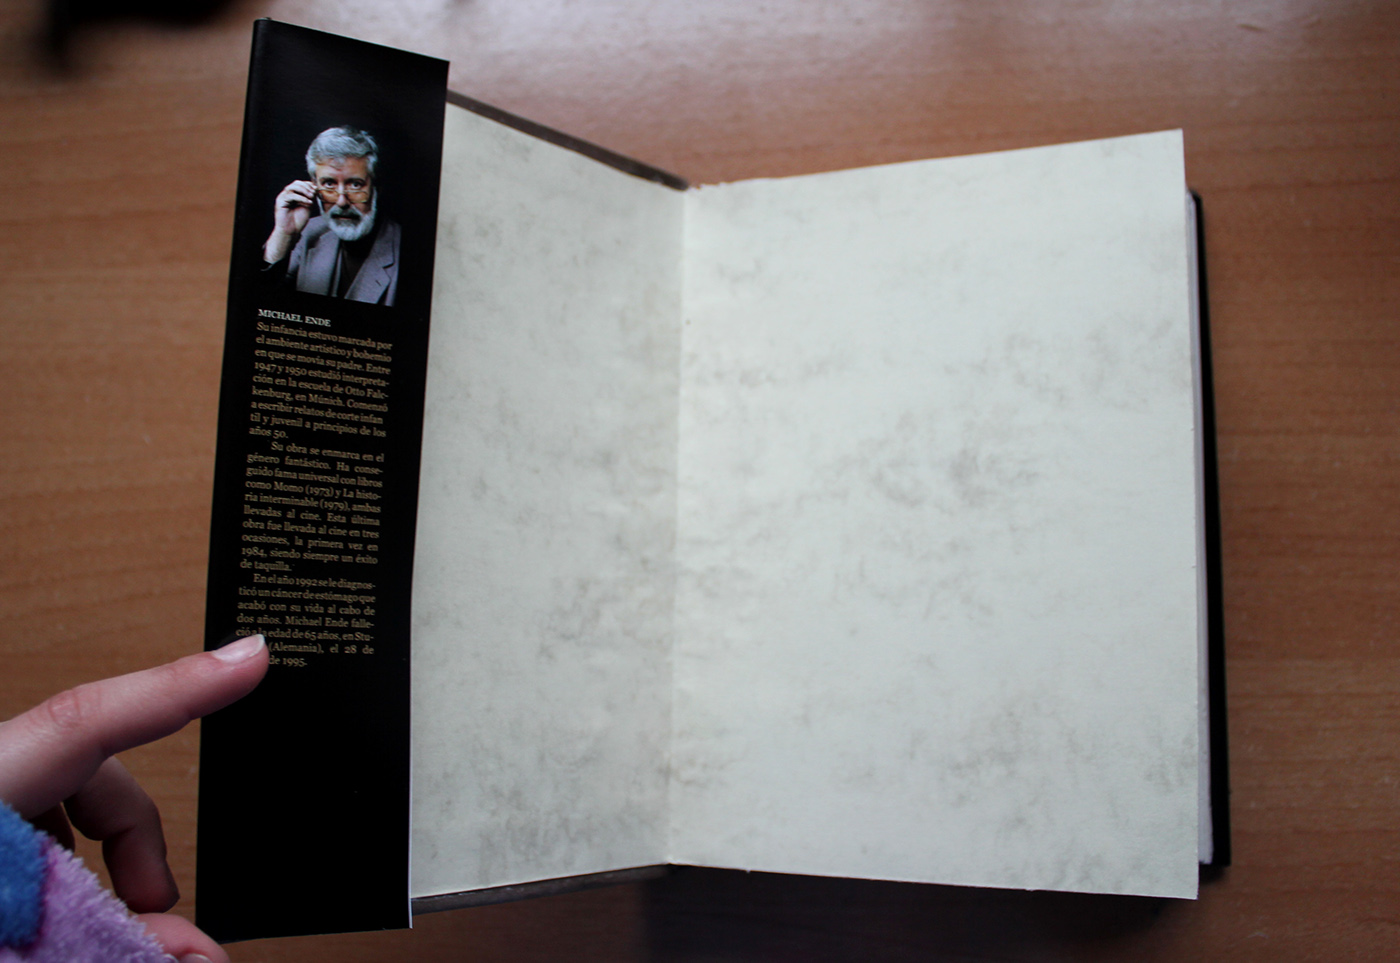 DIY handmade libro editorial cubierta auryn cosido never Ending Atreyu fuyur Bastian historia interminable artesanal